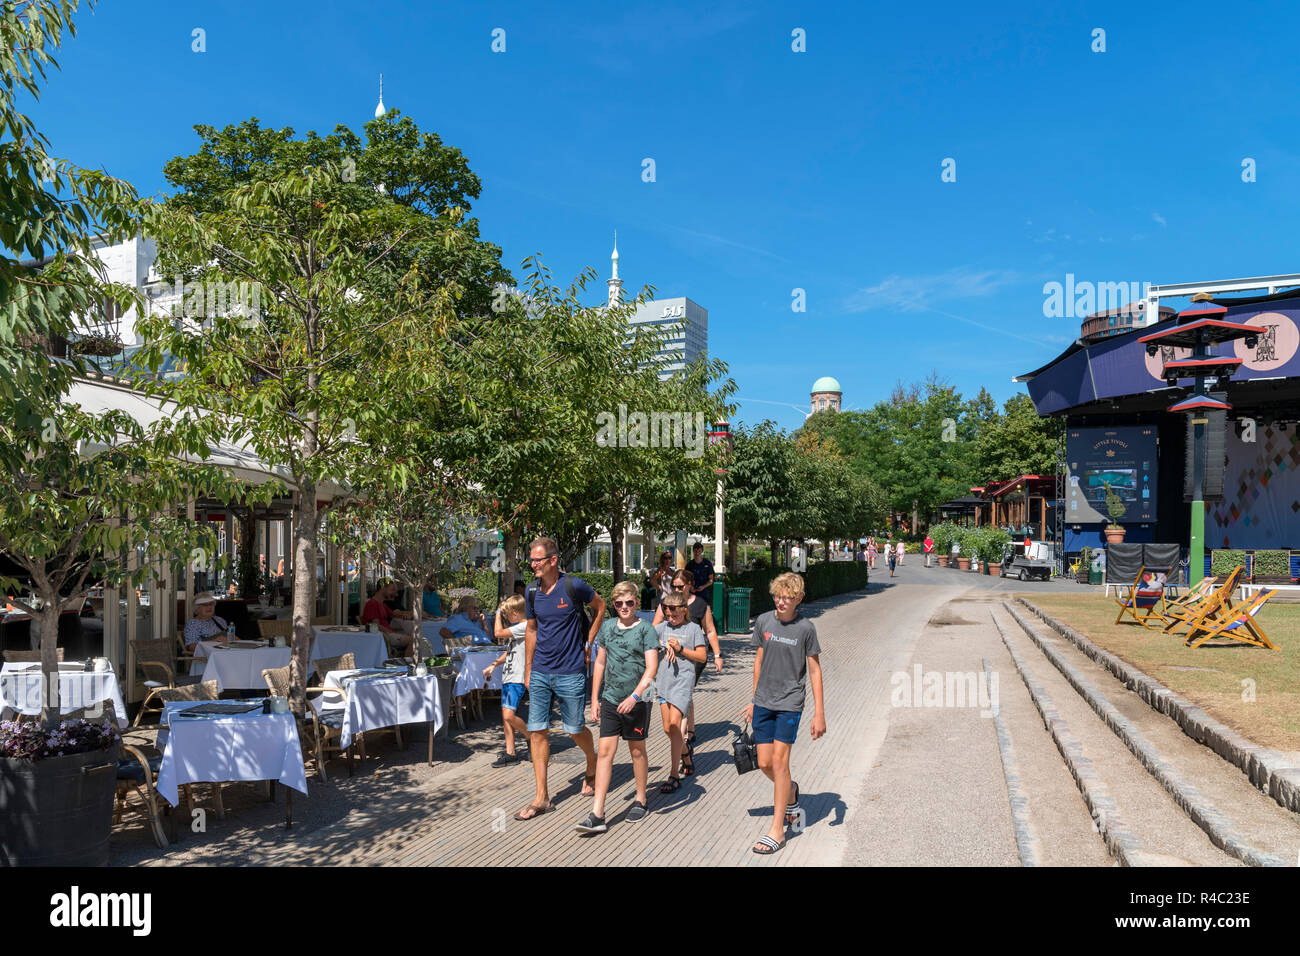 Famiglia camminare davanti a un ristorante presso i Giardini di Tivoli, Copenaghen, Zelanda, Danimarca Foto Stock